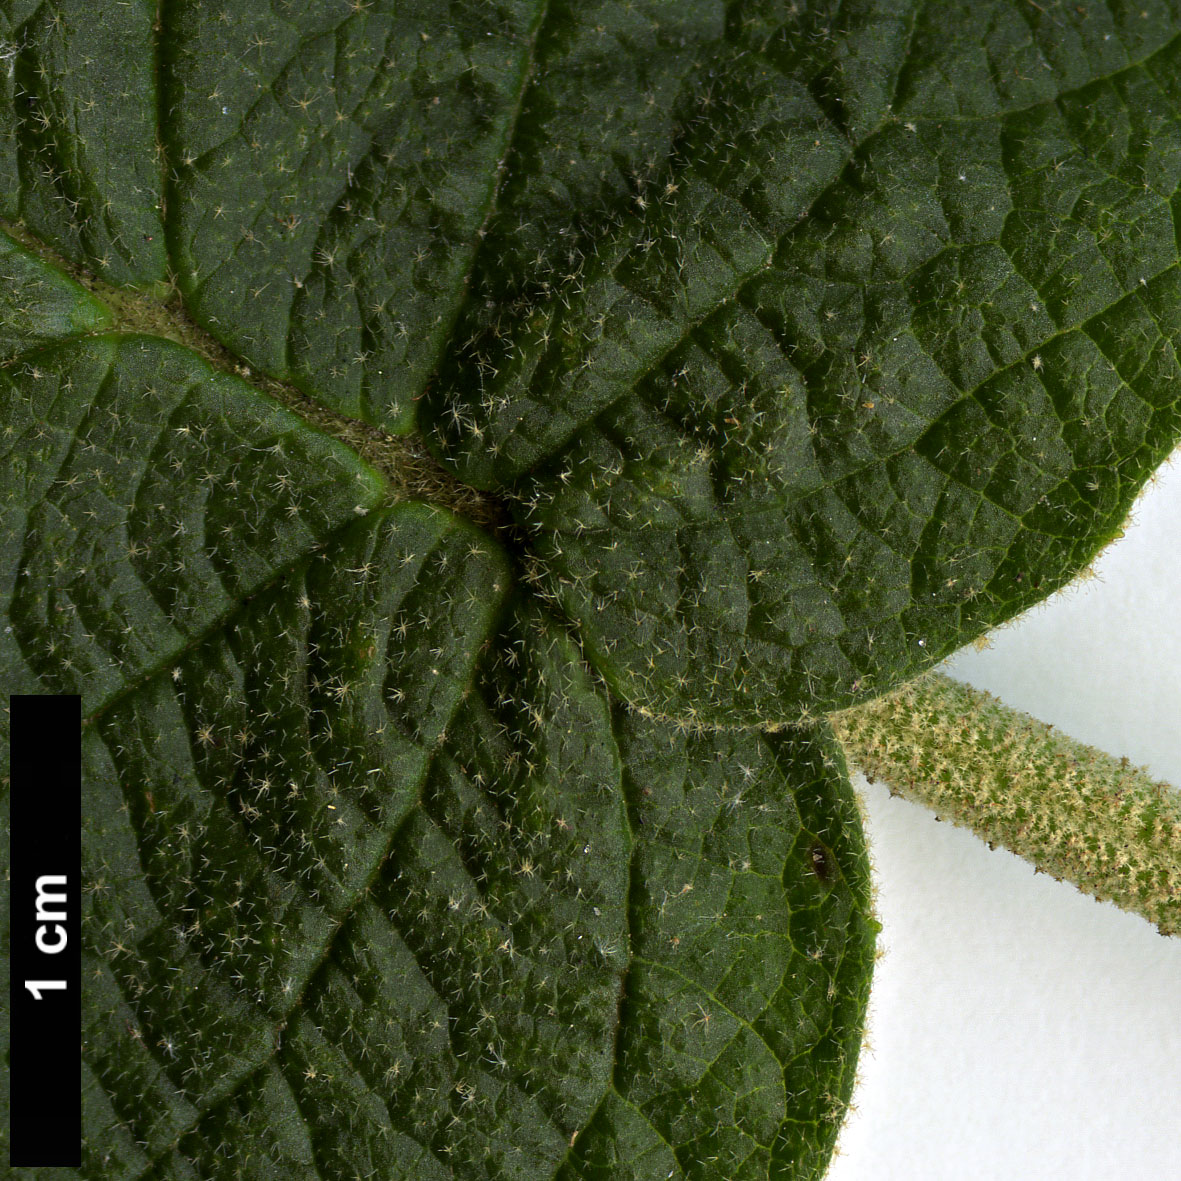 High resolution image: Family: Adoxaceae - Genus: Viburnum - Taxon: glomeratum - SpeciesSub: subsp. magnificum